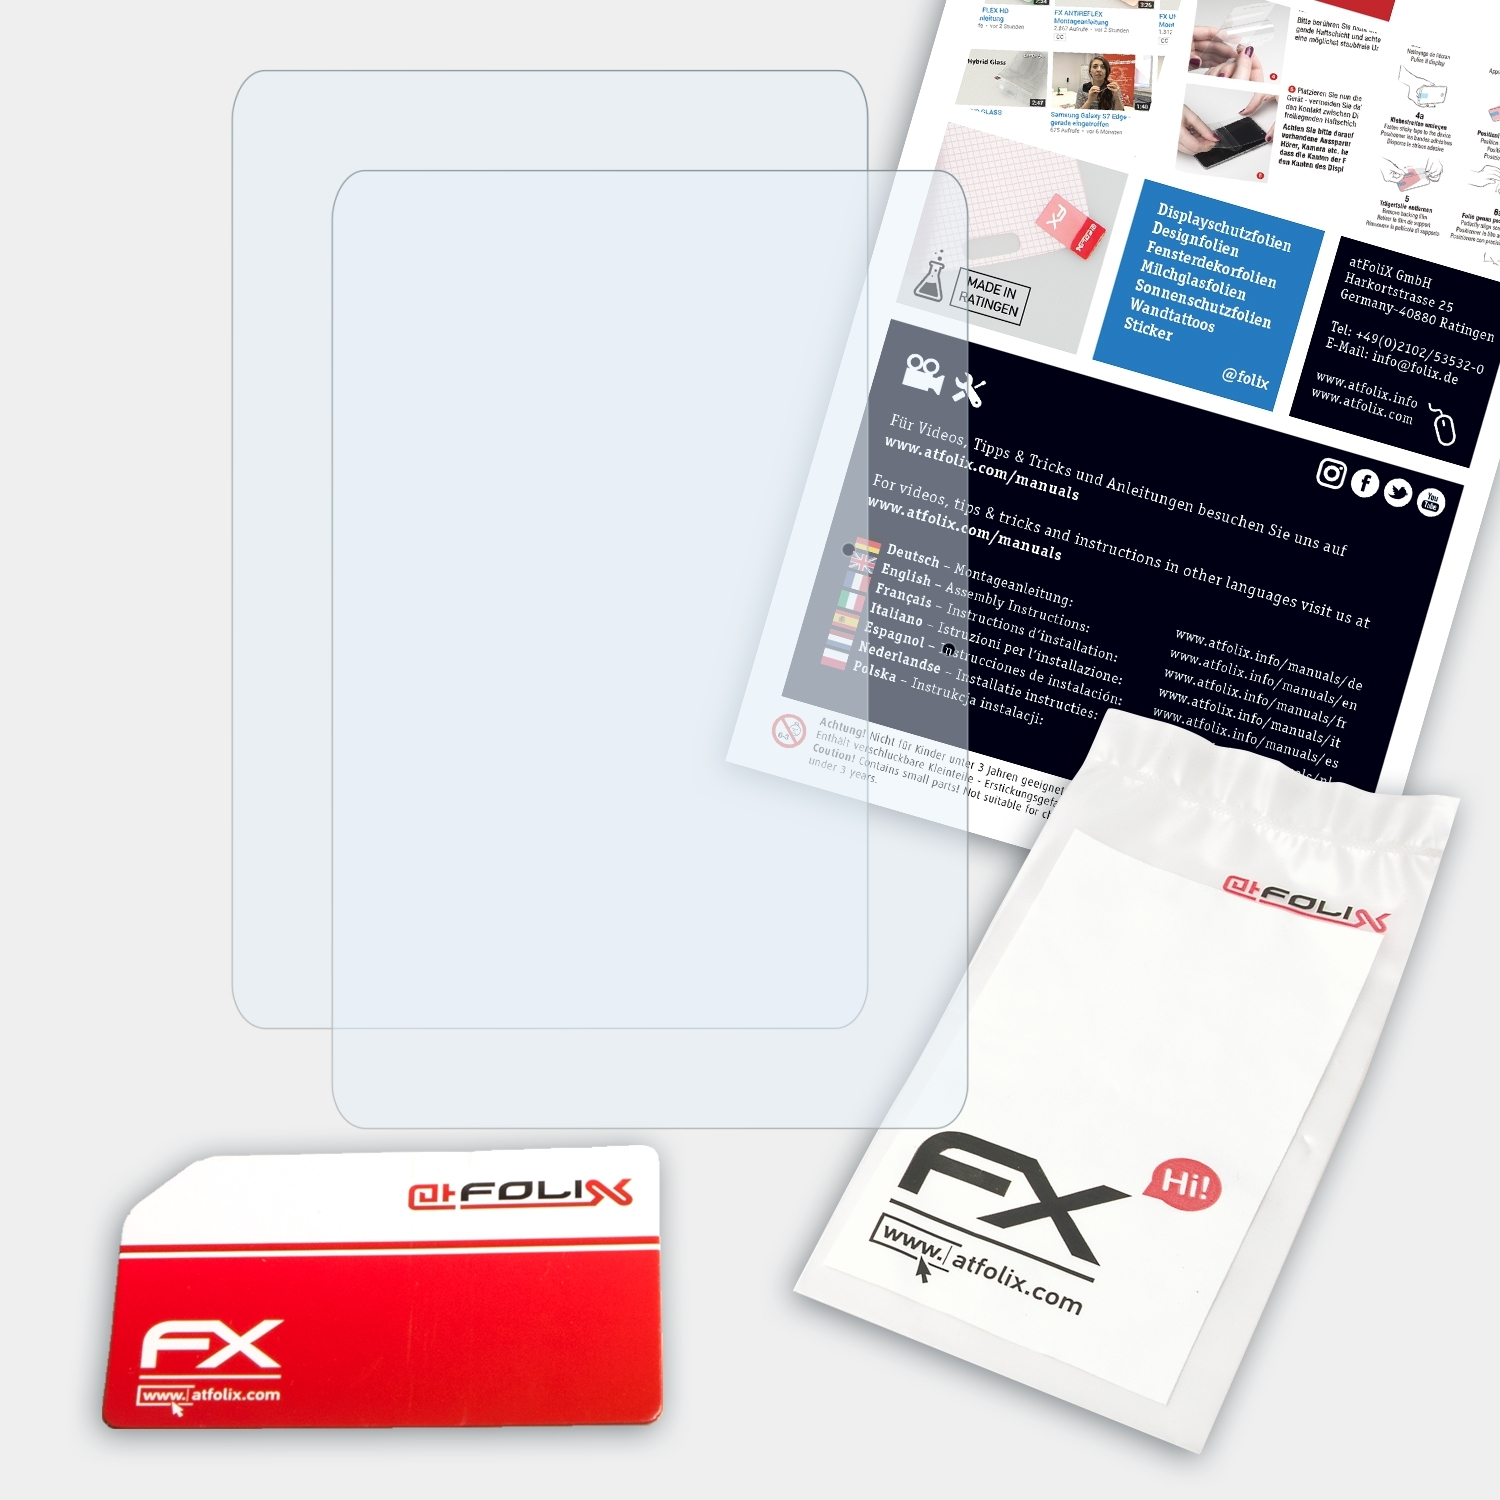 ATFOLIX 2x FX-Clear Displayschutz(für Acer Iconia A210)